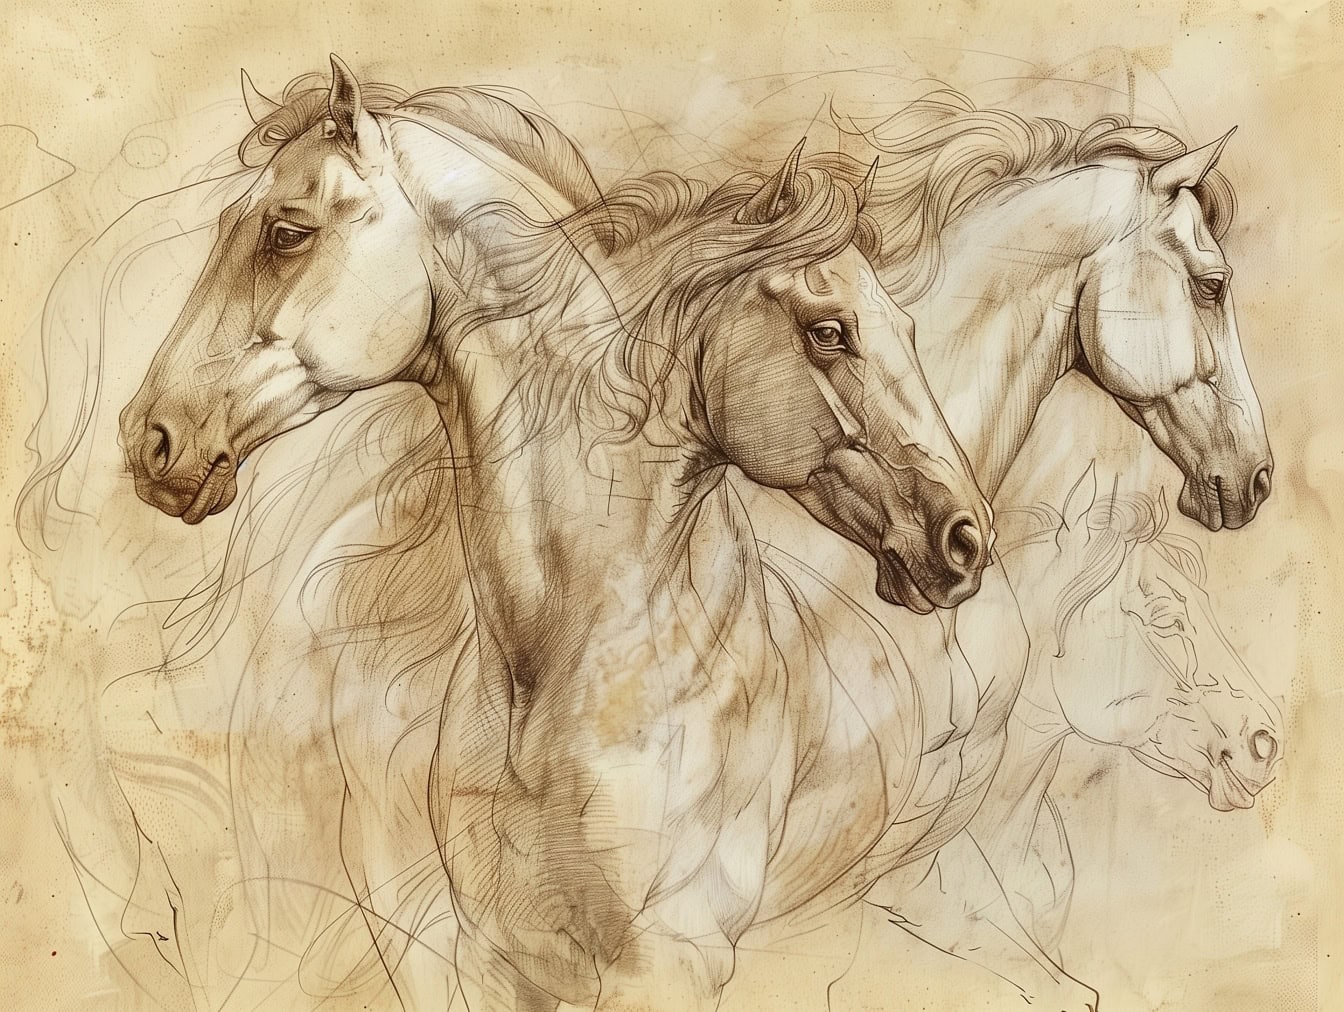 Un croquis de travail inachevé de plusieurs chevaux sur papier brun jaunâtre délavé, rappelant l’œuvre d’un artiste médiéval